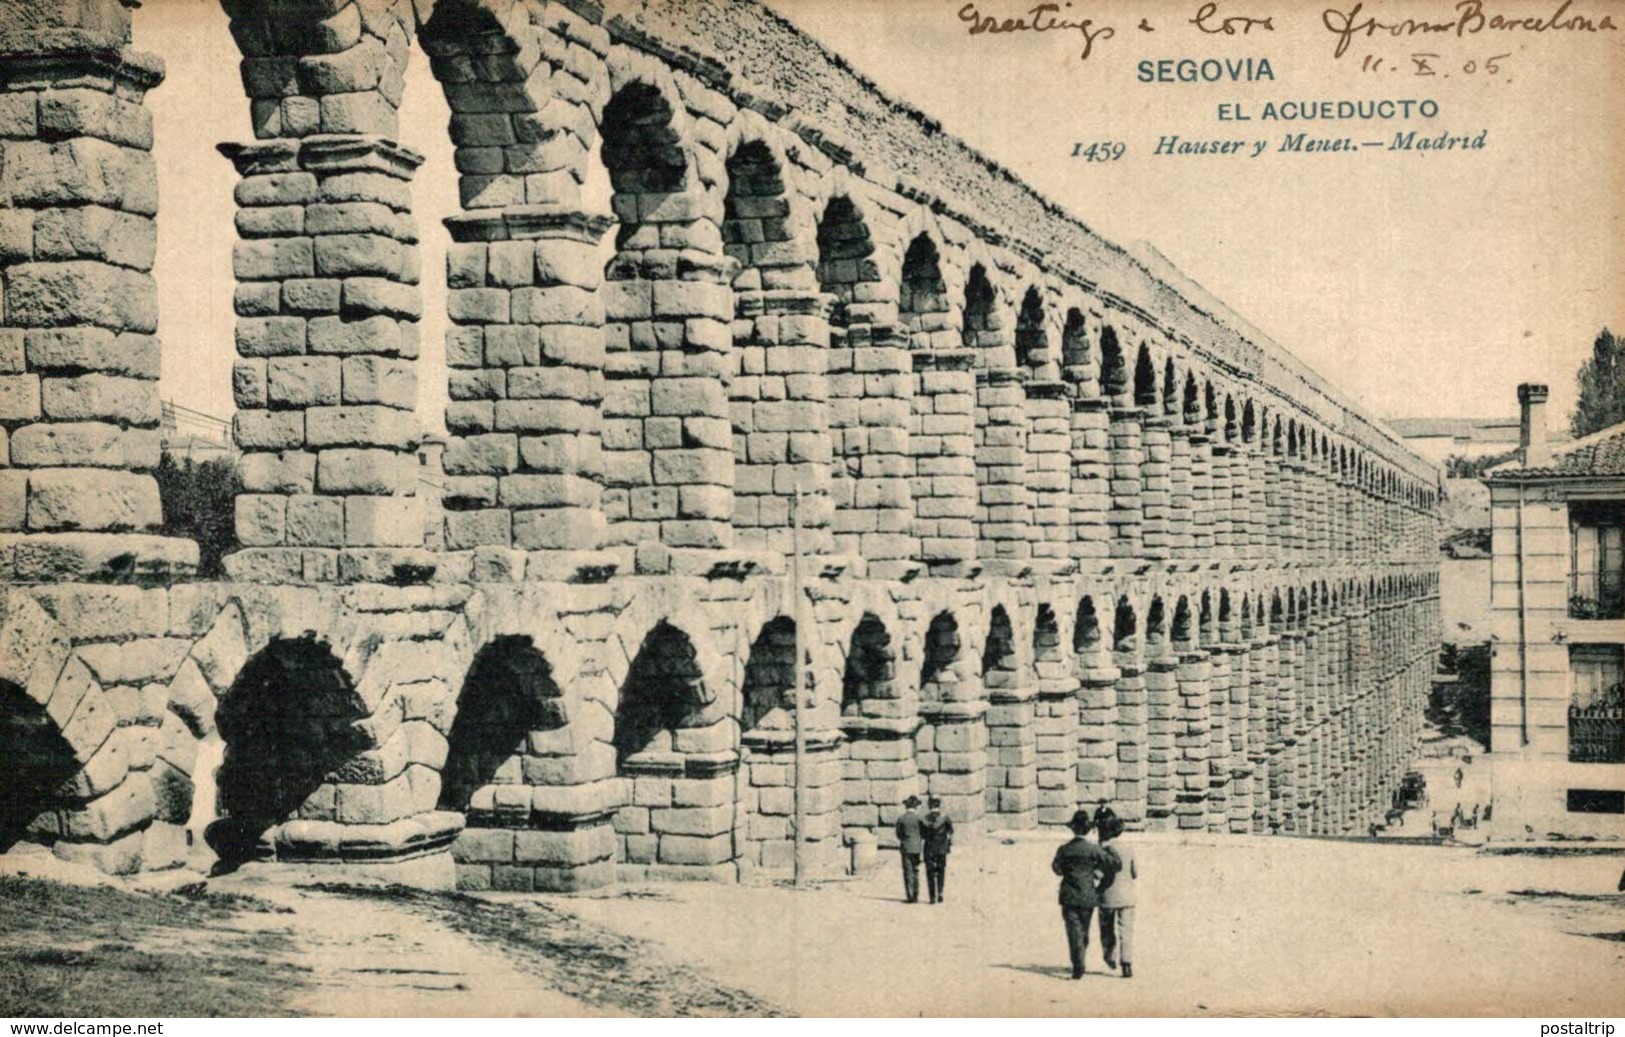 SEGOVIA - Segovia